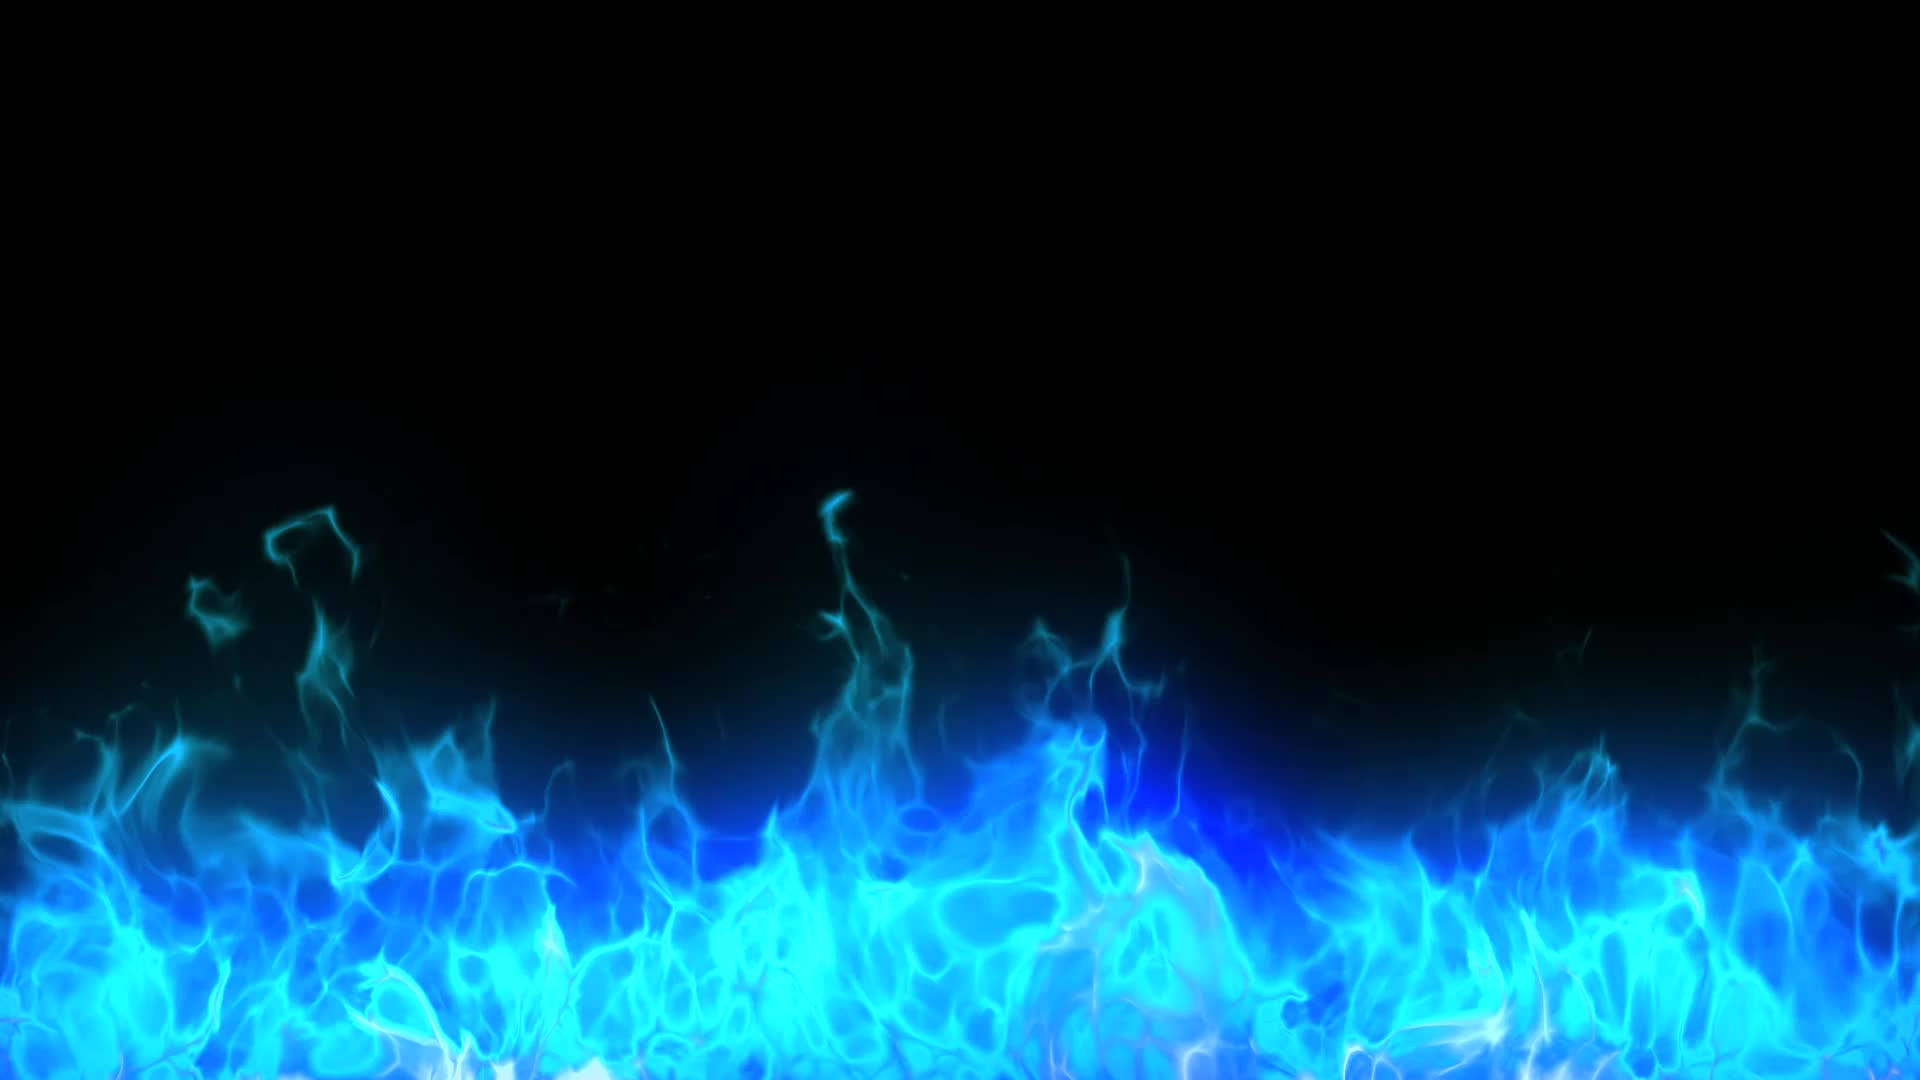 Blue Flames Fire Wallpaper